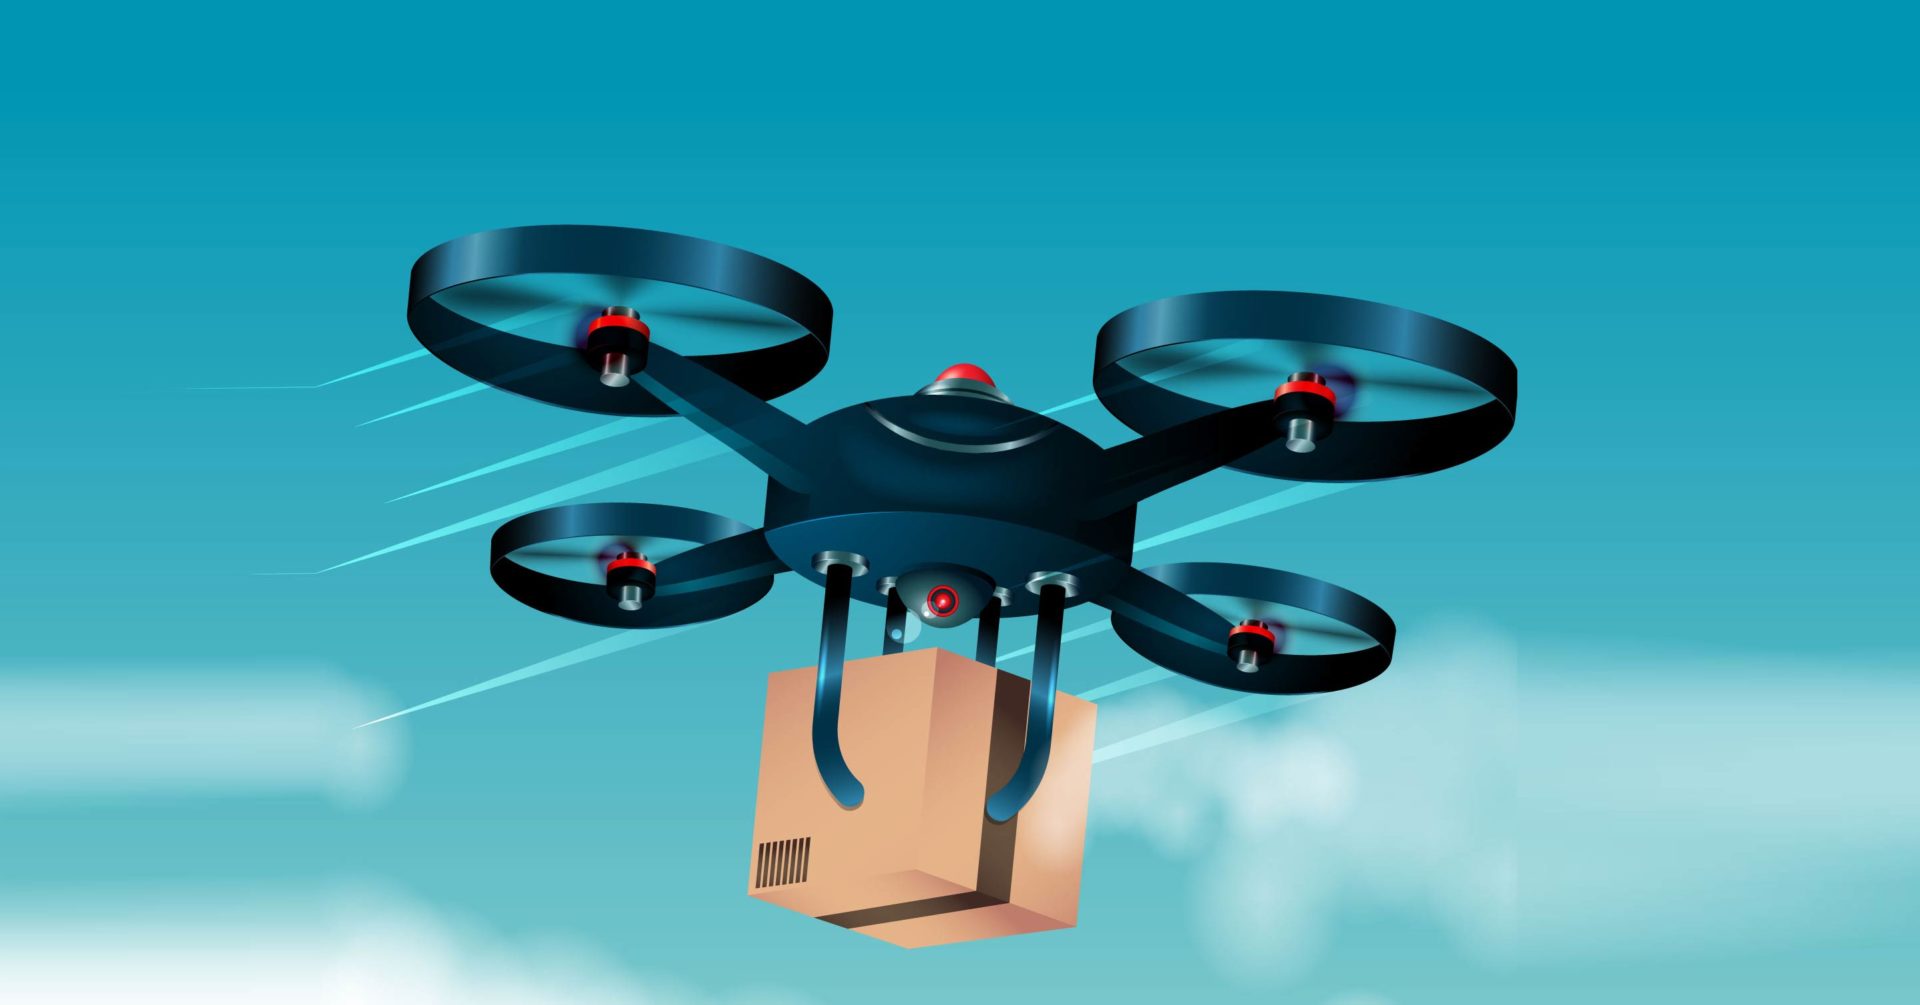 Drohne liefert Paket aus (Bild: freepik)